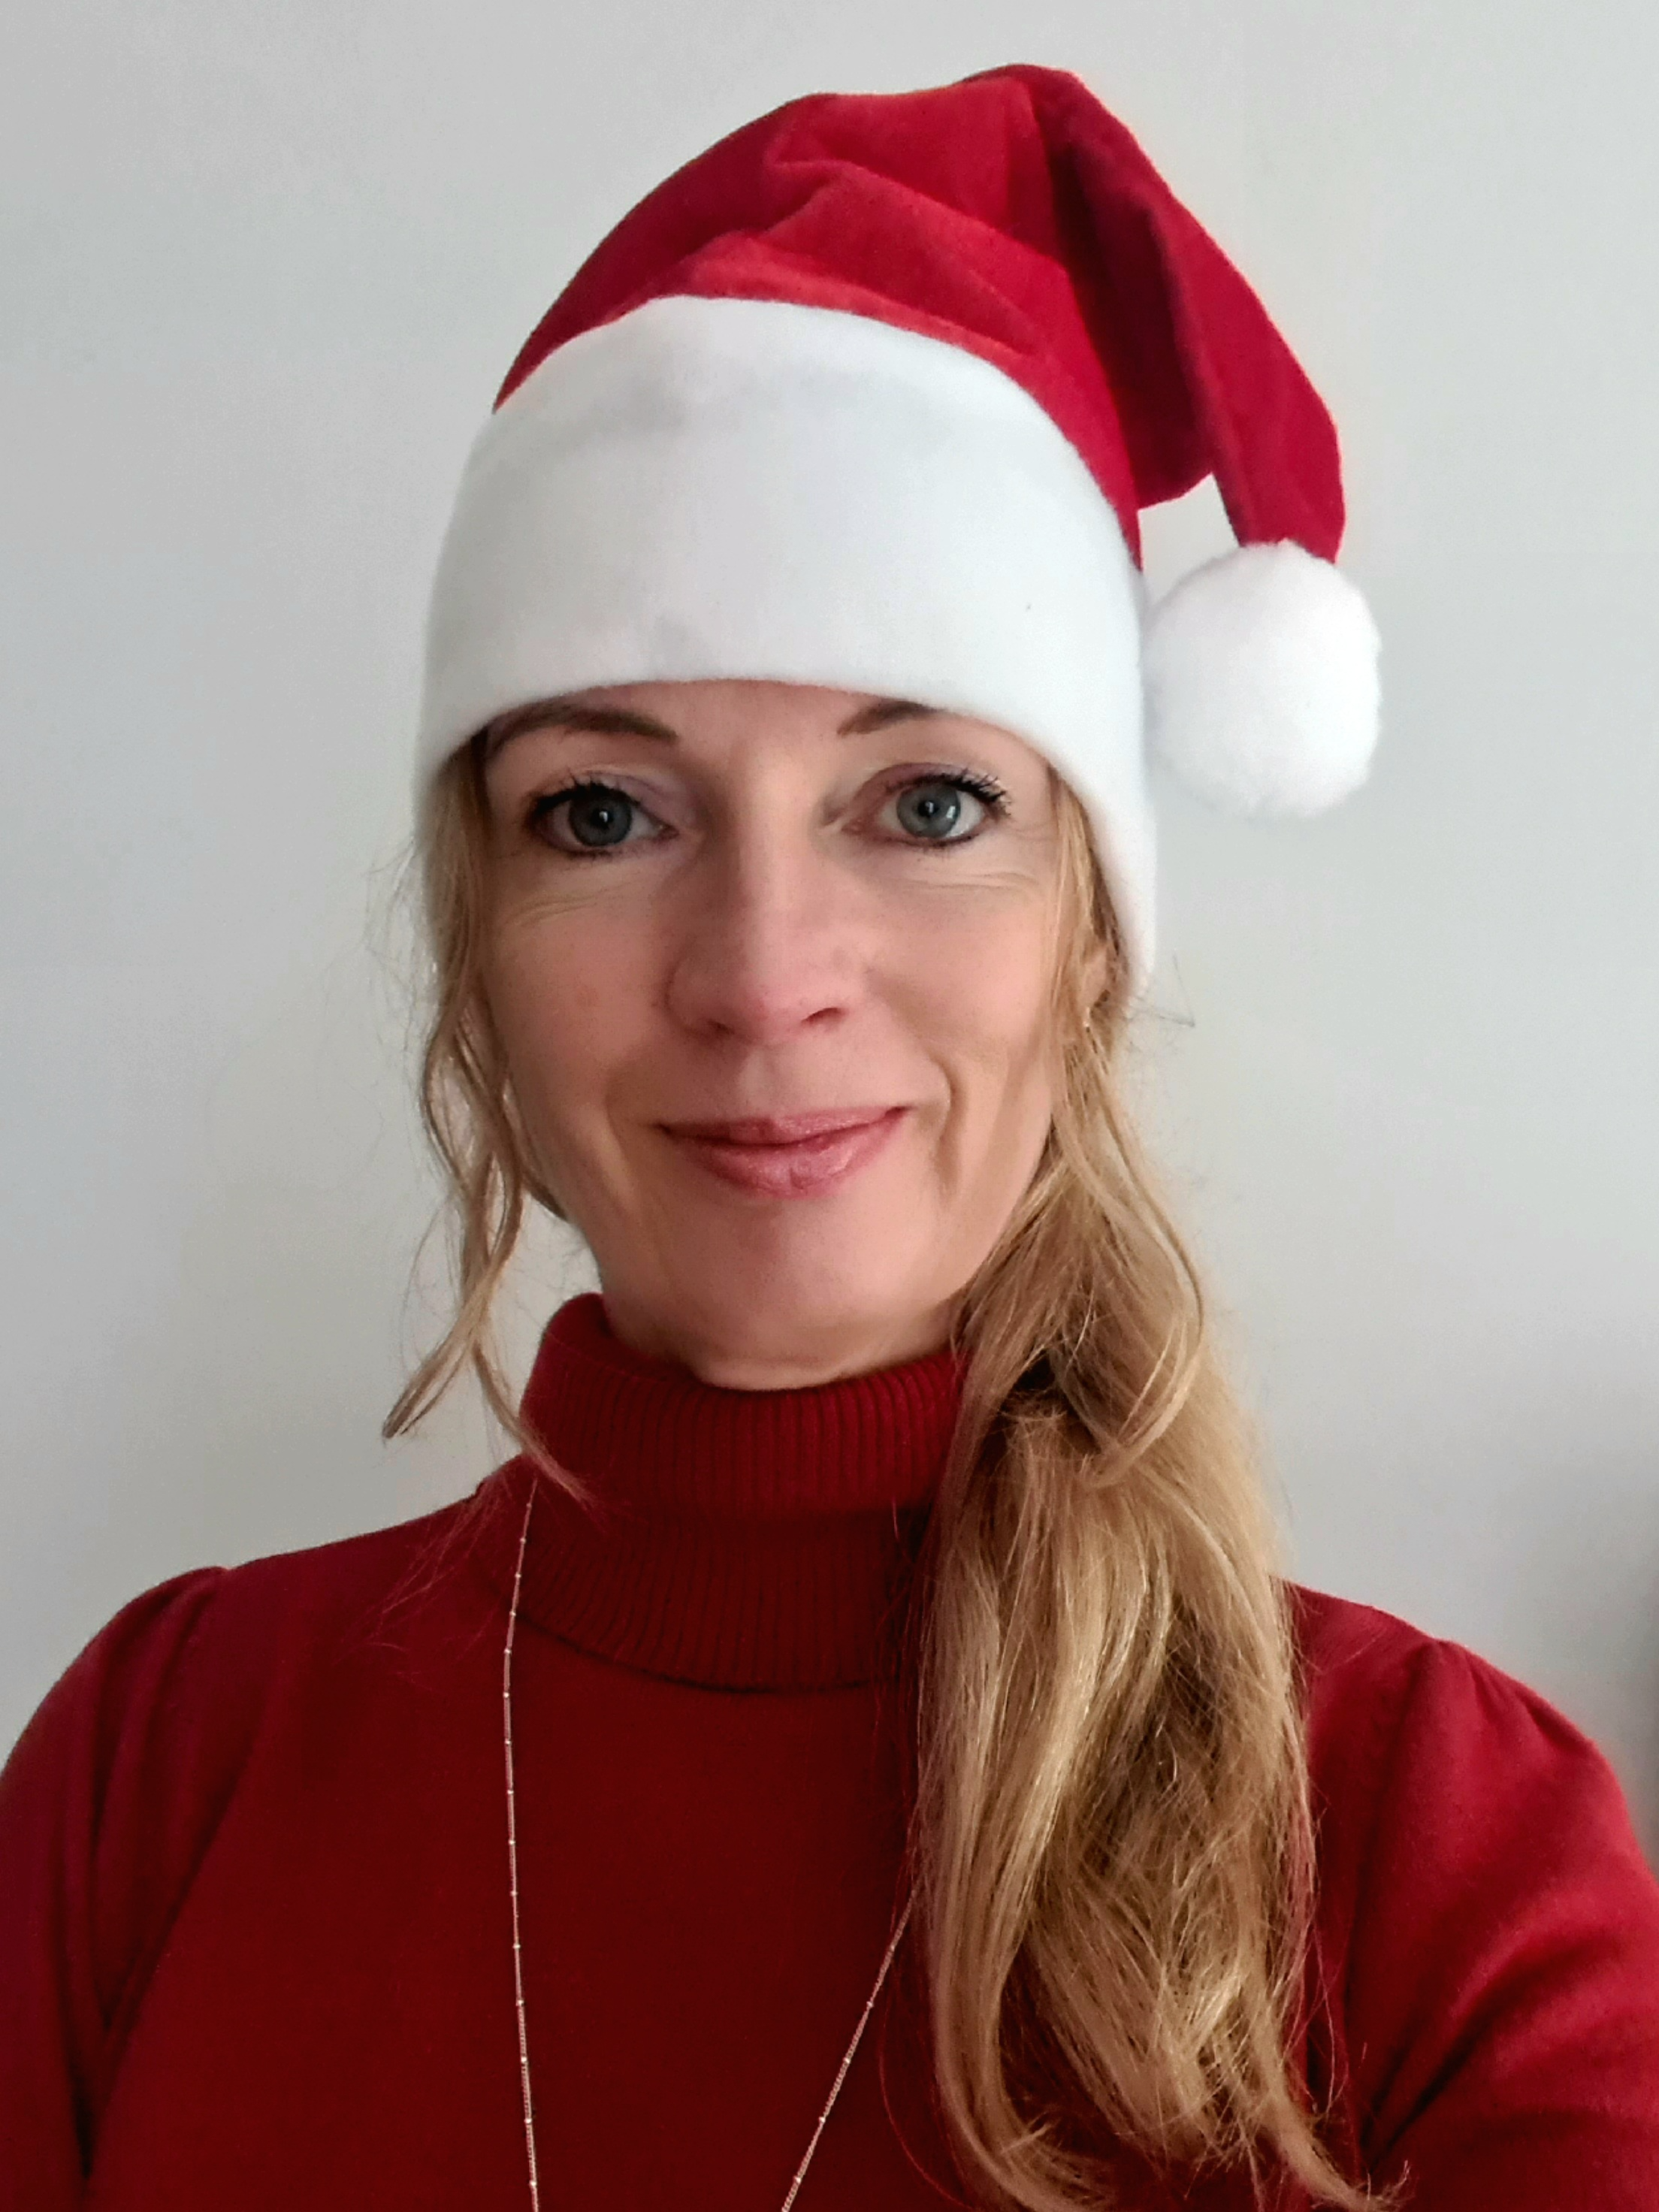 Kate Allen in a Santa hat.